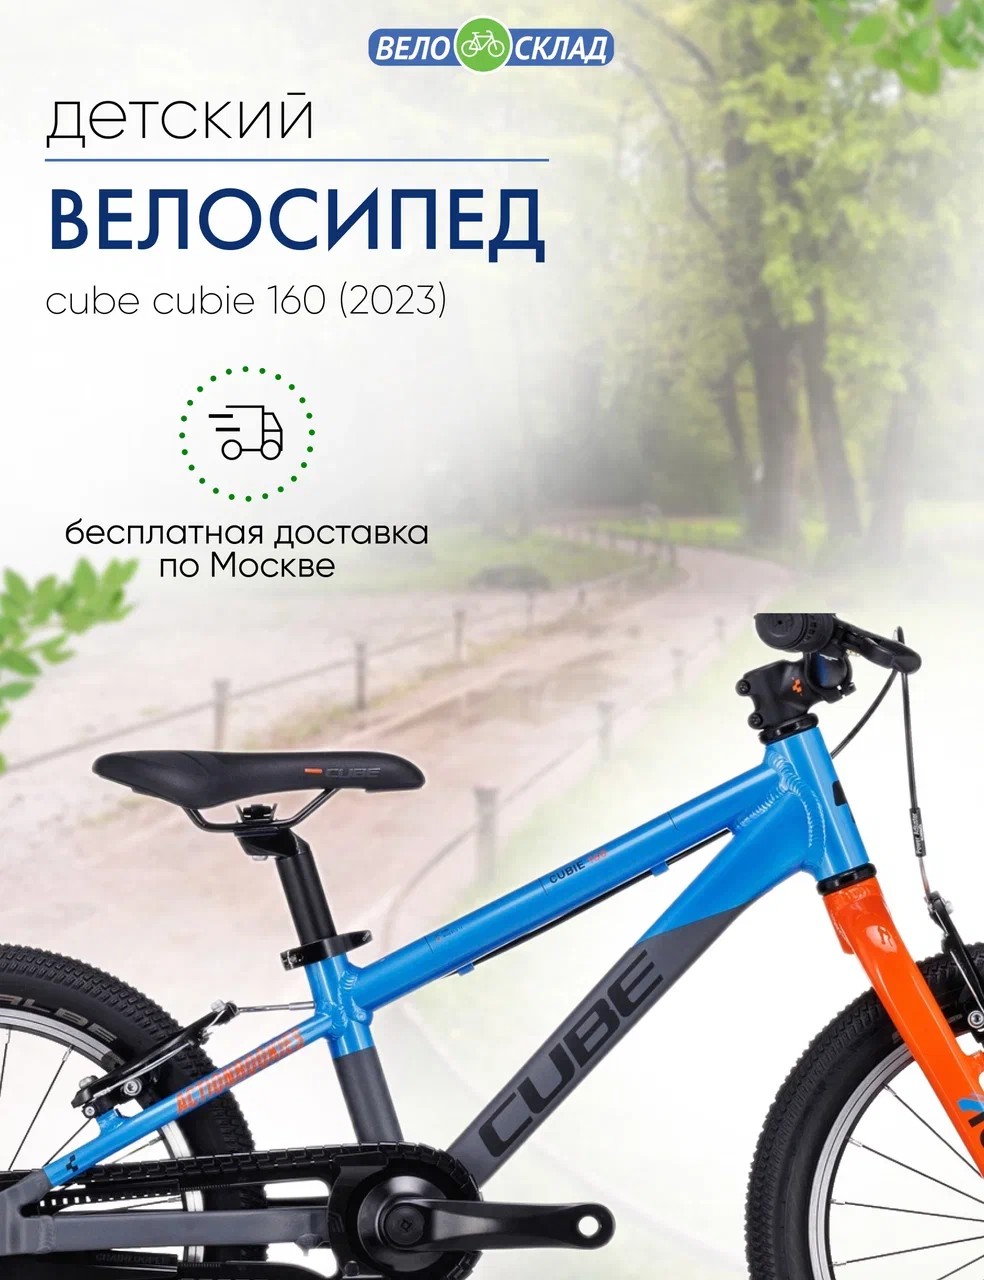 Детский велосипед Cube Cubie 160, год 2023, цвет Серебристый-Синий